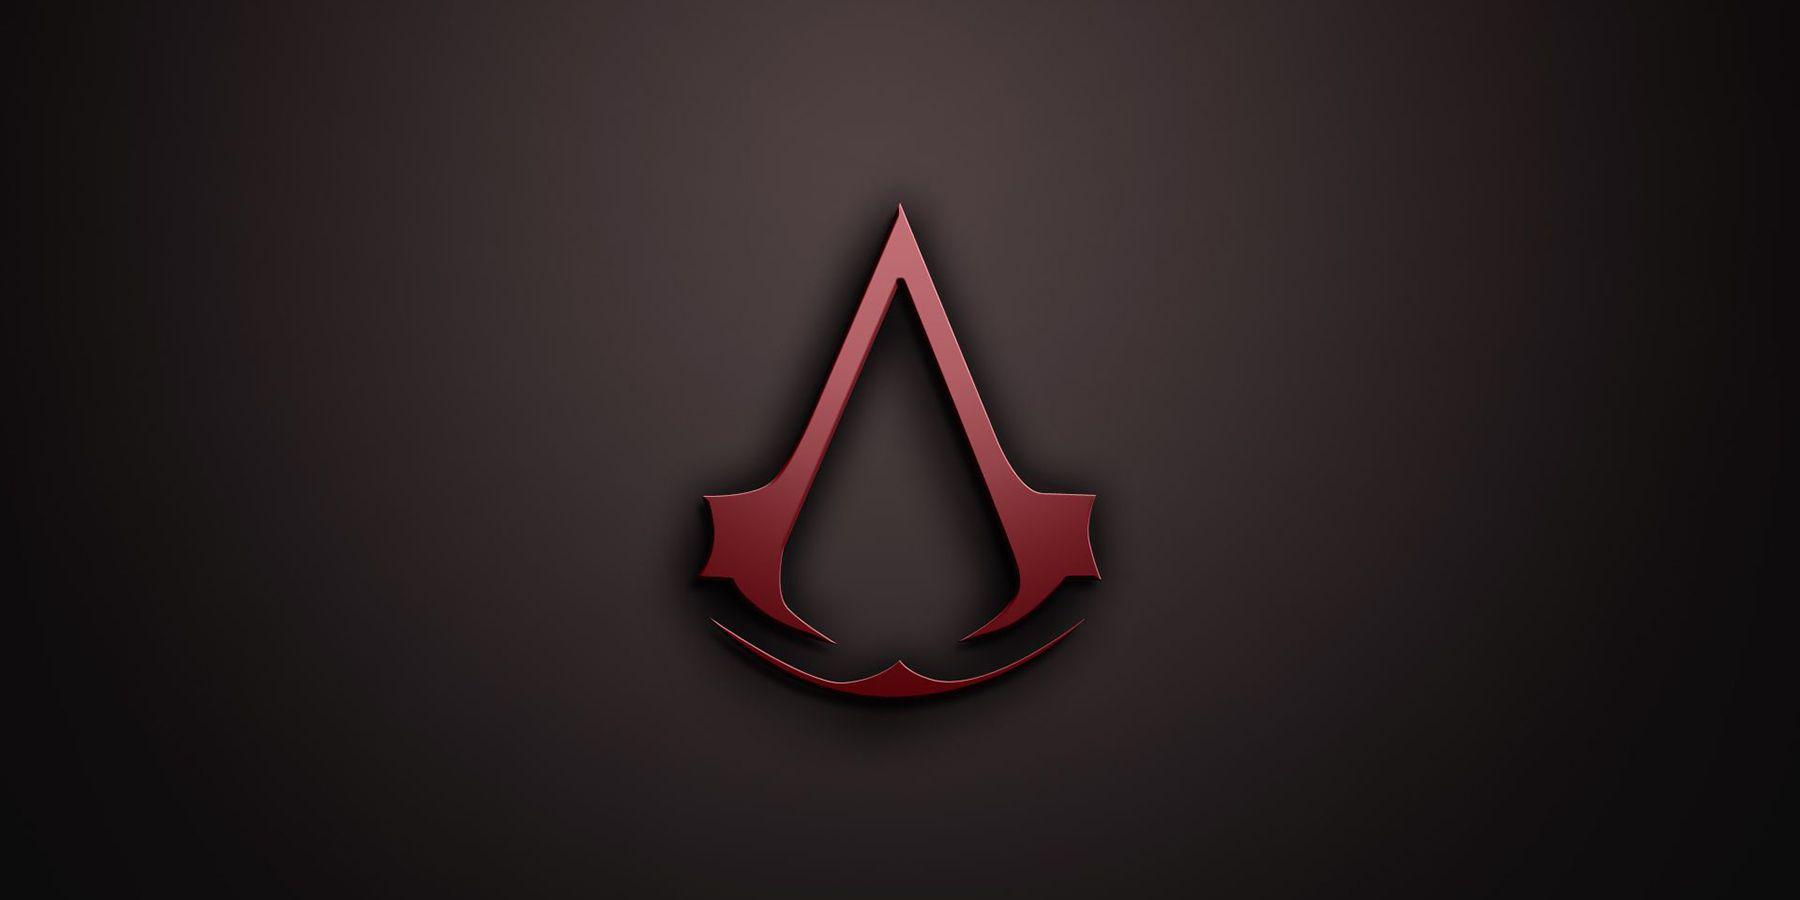 Como o Assassin s Creed Red pode tirar proveito do conhecimento existente no Japão